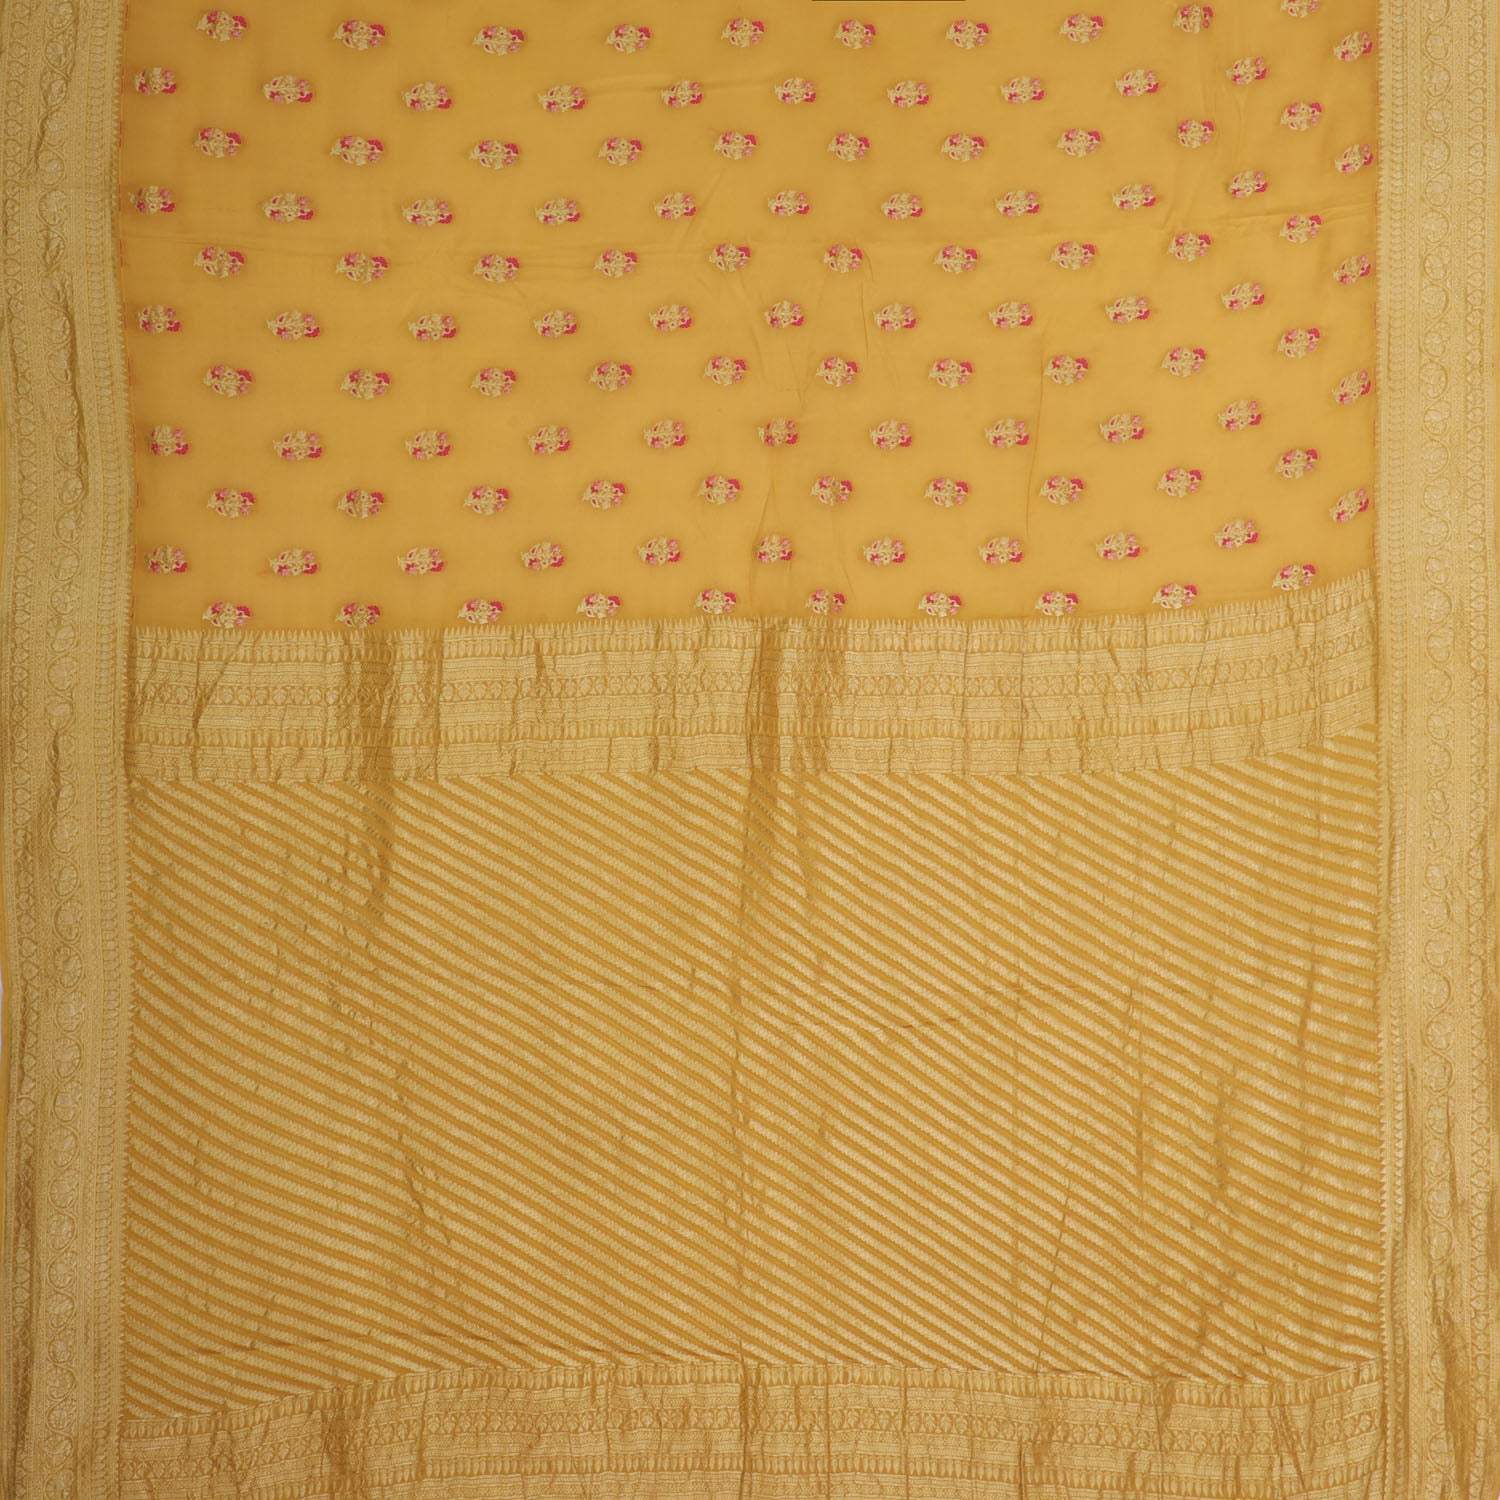 Mustard Yellow Banarasi Silk Saree With Floral Motifs - Singhania's